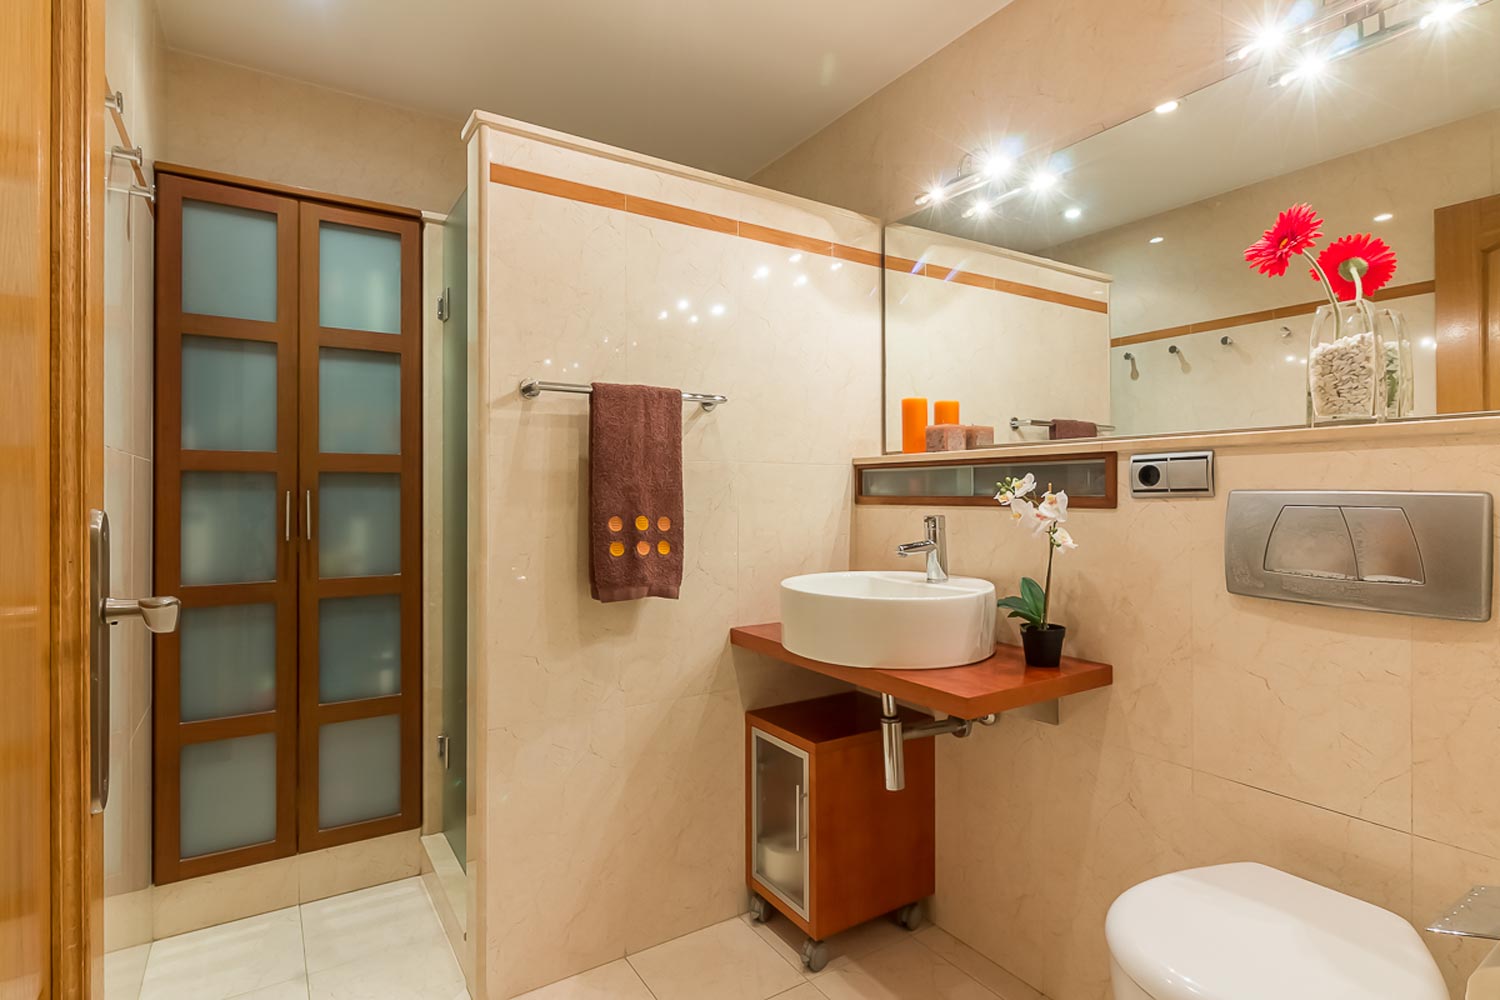 Cuarto de baño con lavabo sobre encimera suspendida y armarios empotrados_ducha separada con tabique que no llega hasta el techo y azulejo de gran formato